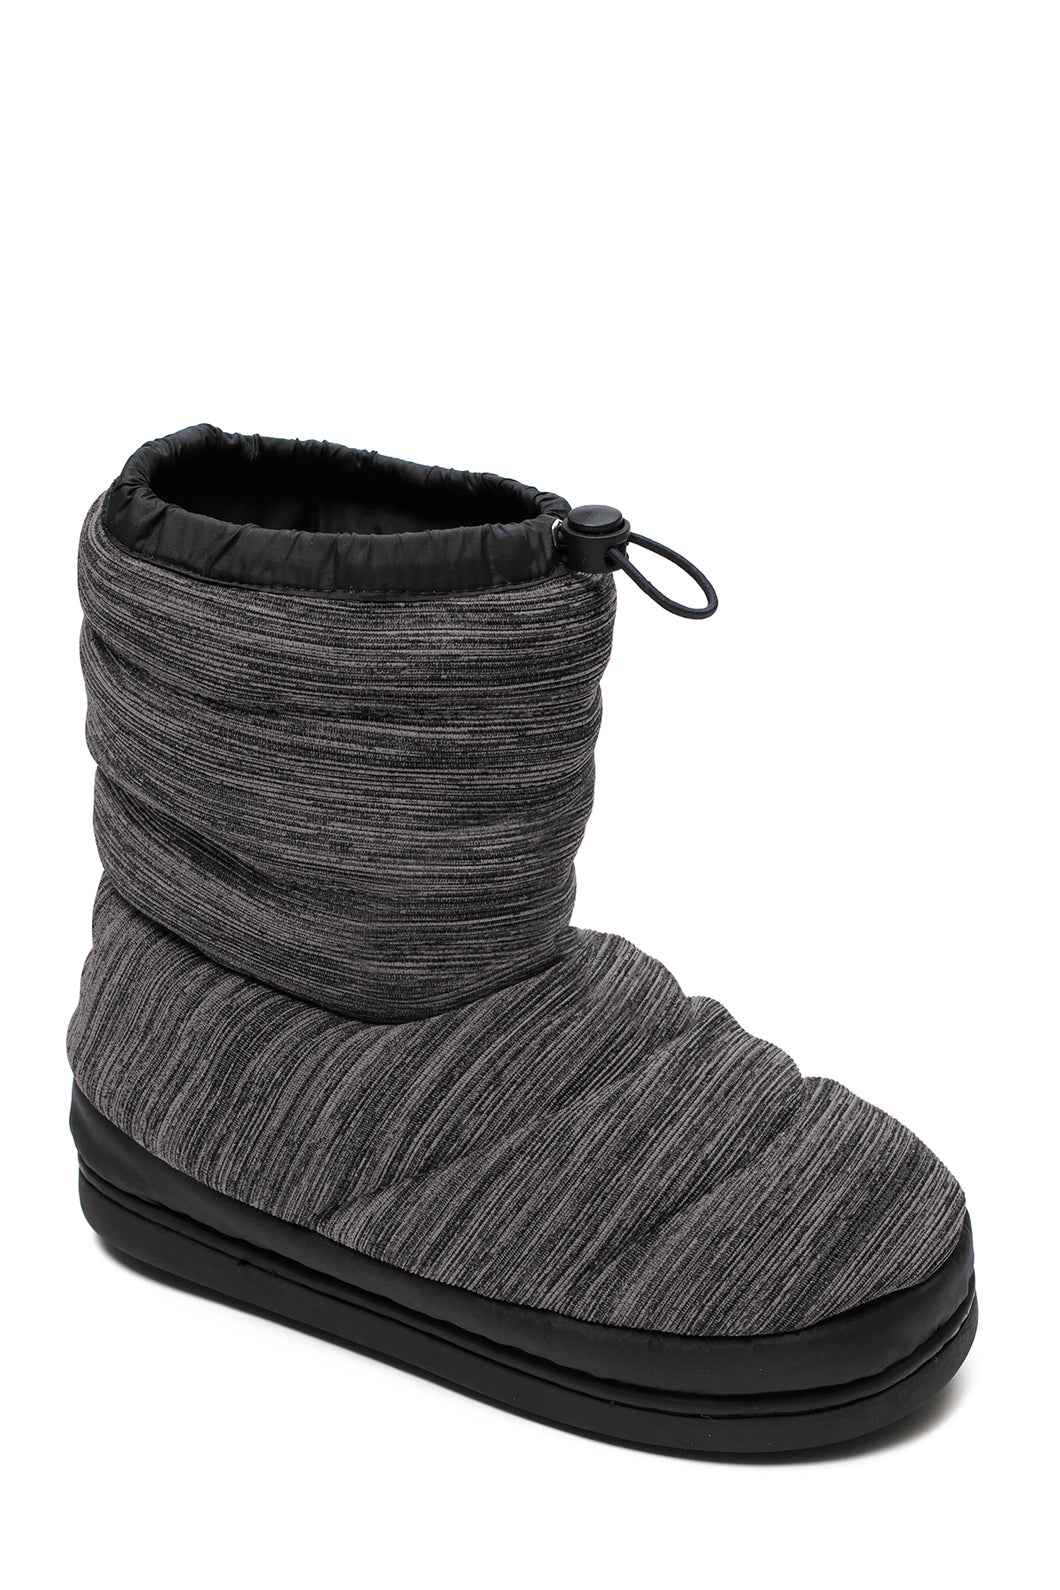 Winn - Warm Up Shoe Booties - BT10